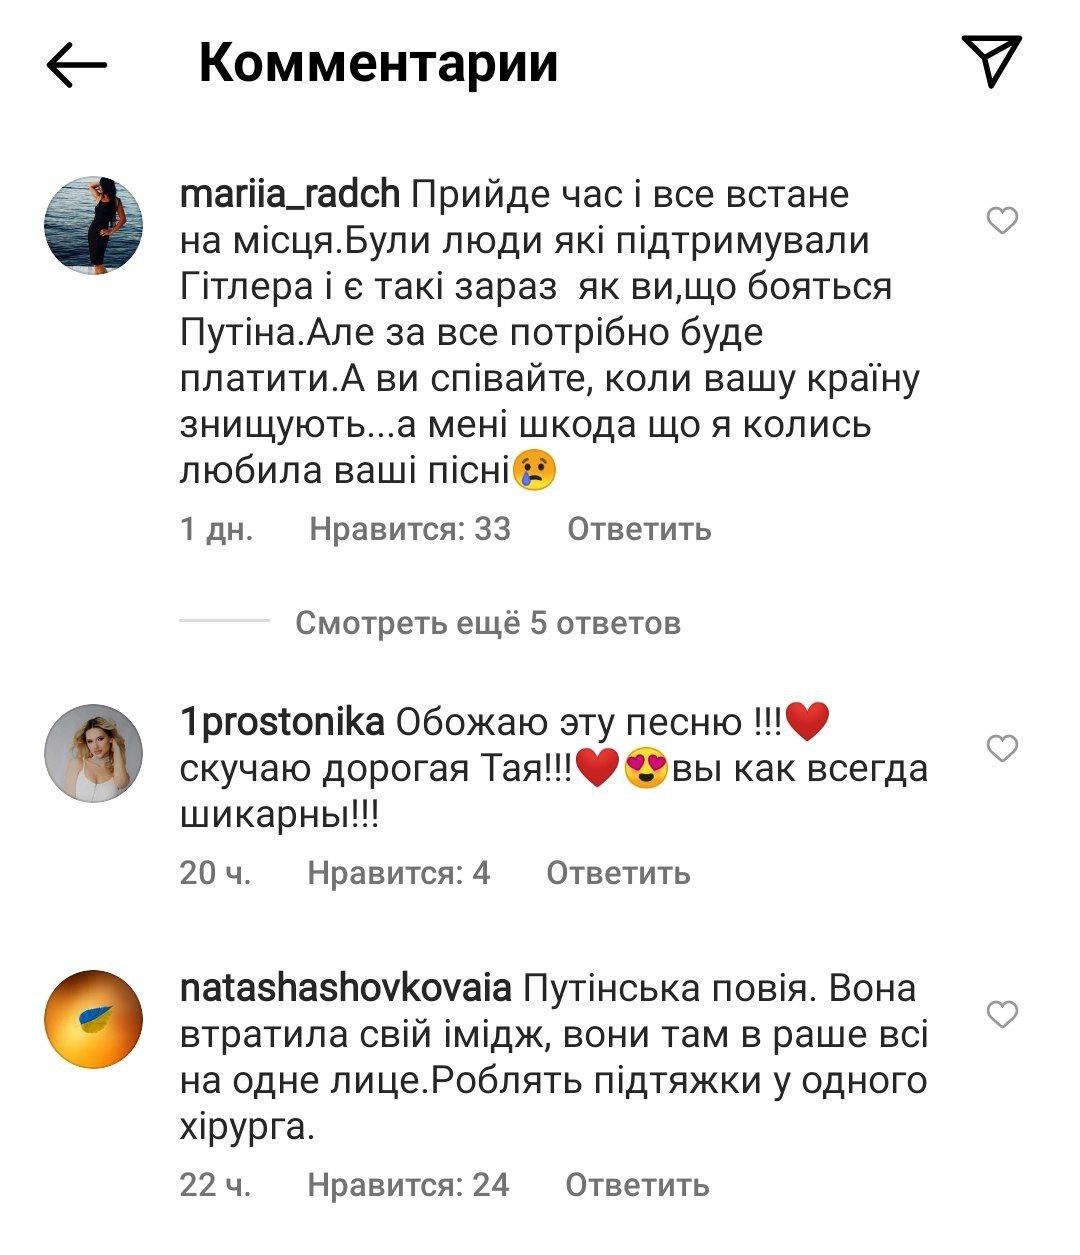 Комментарии под постом Повалий в Instagram